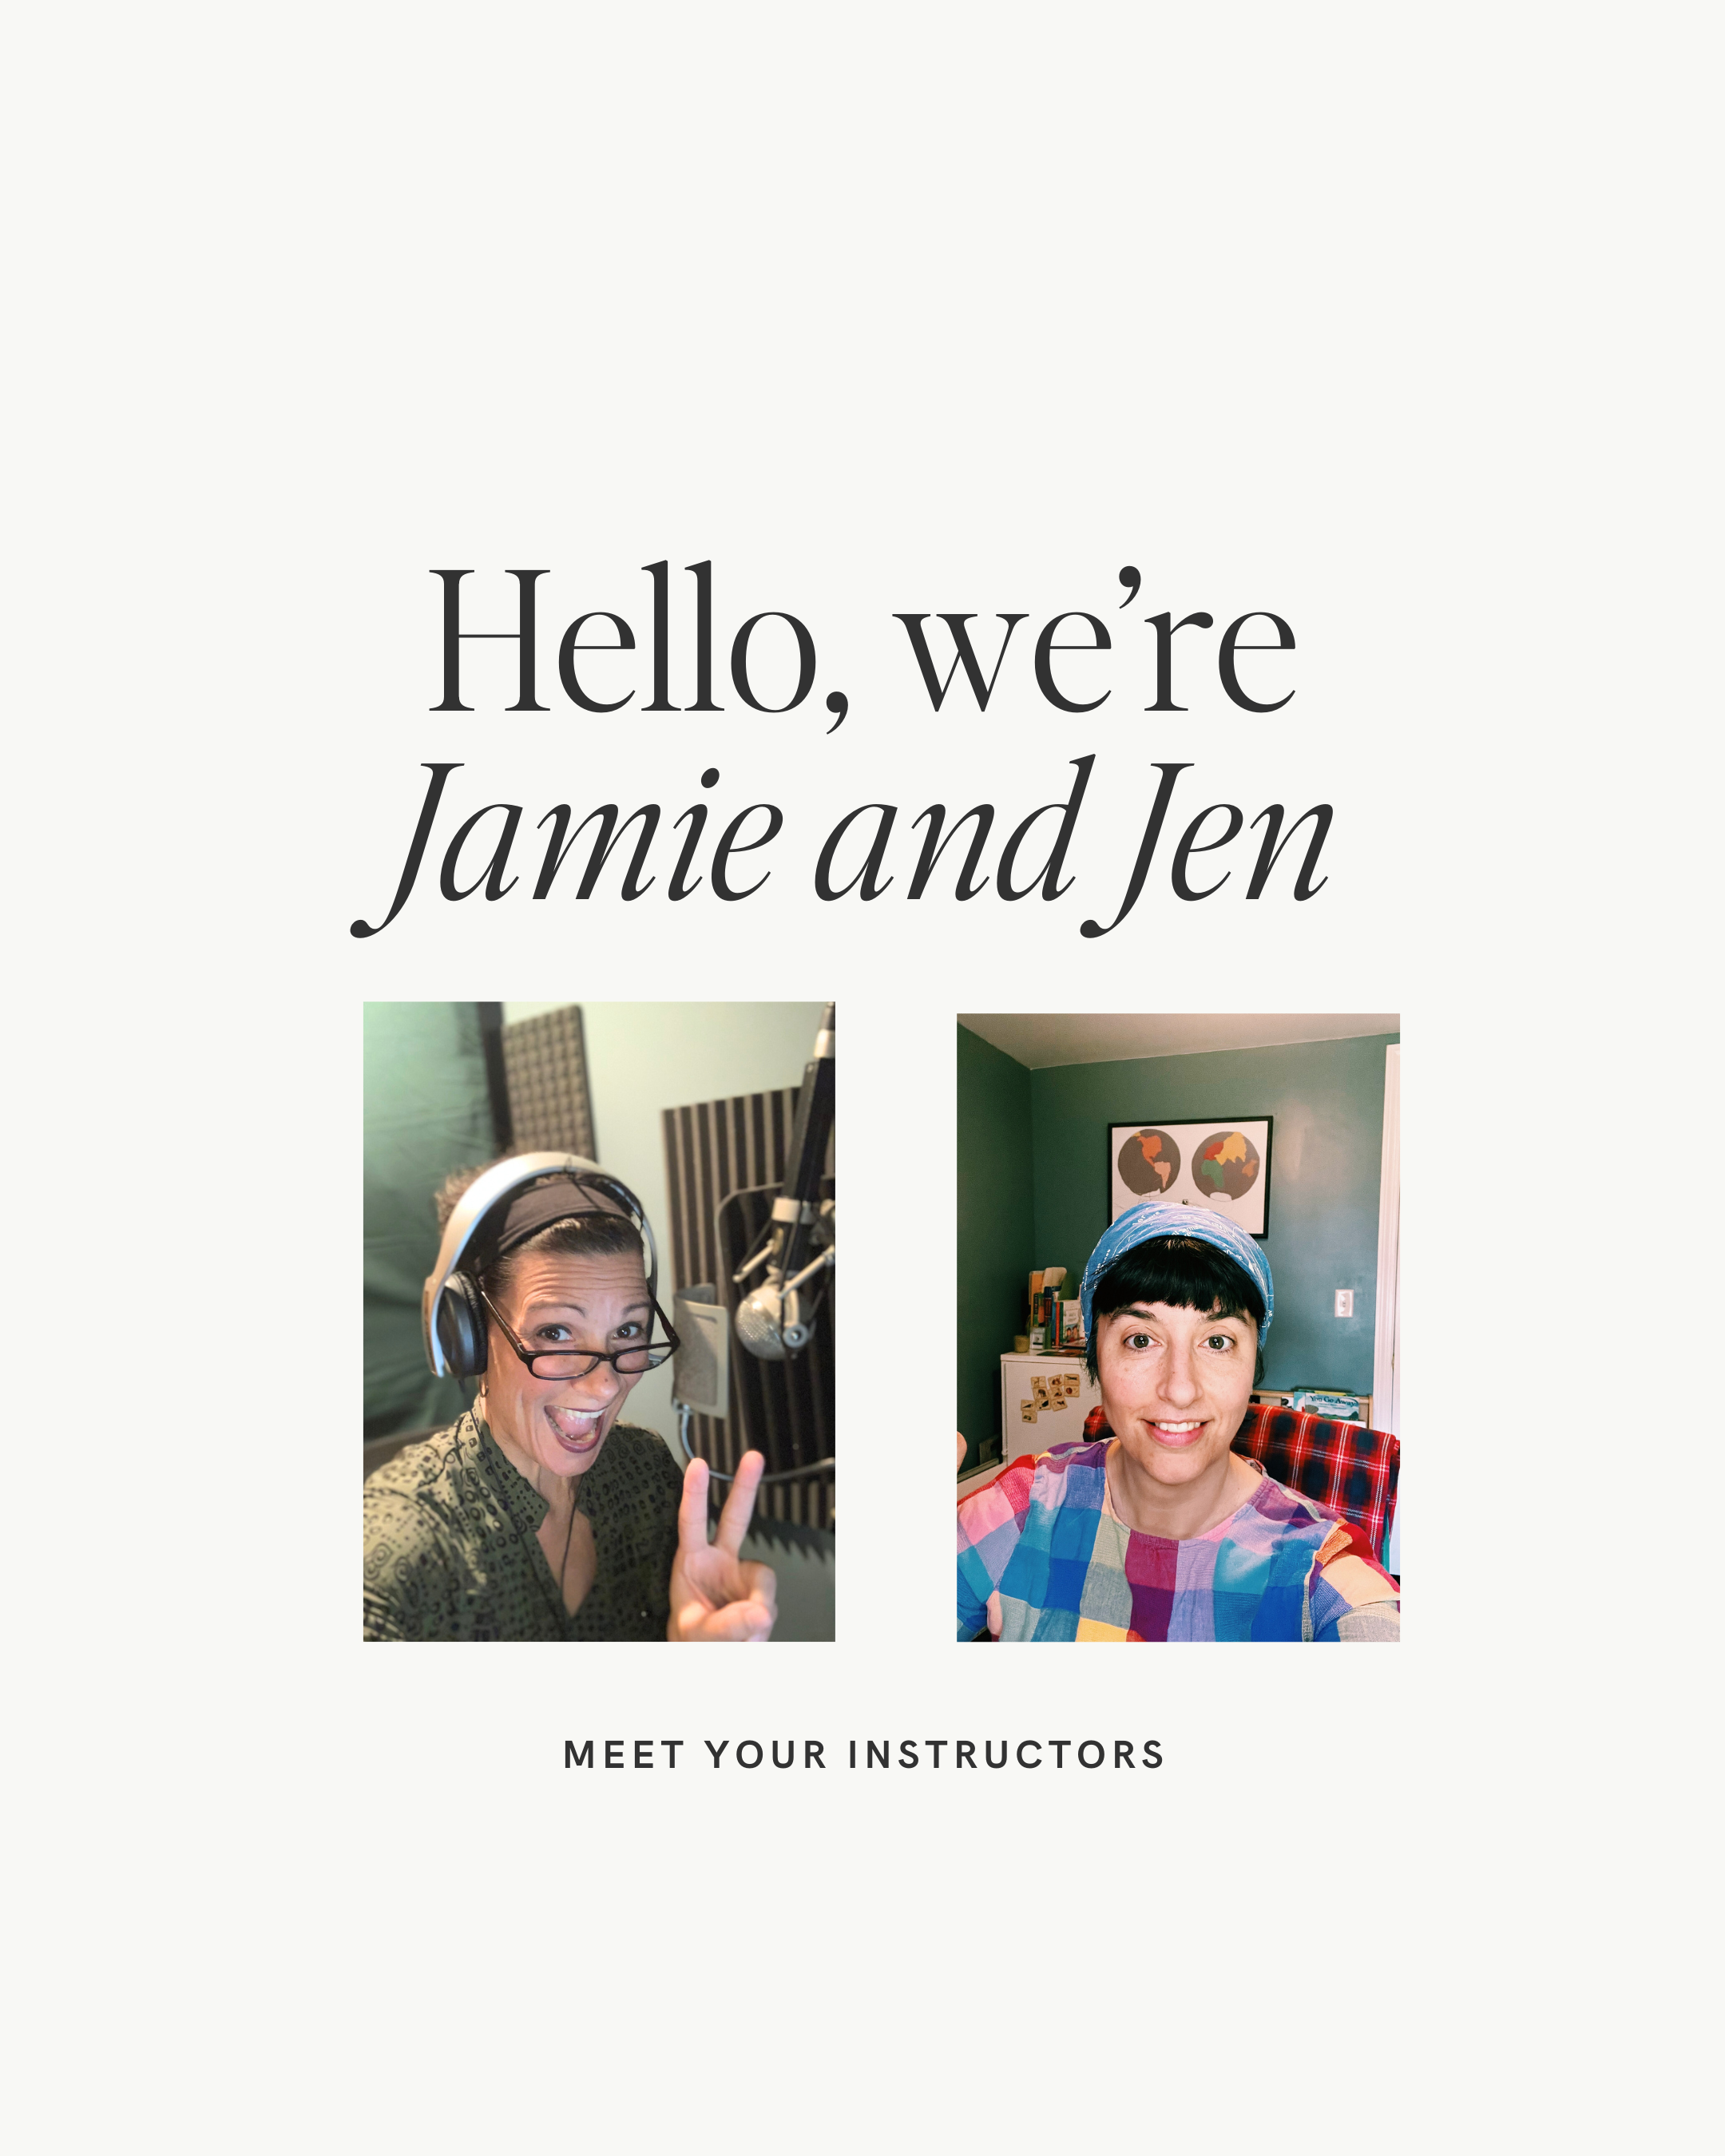 Jamie and Jen bio photos